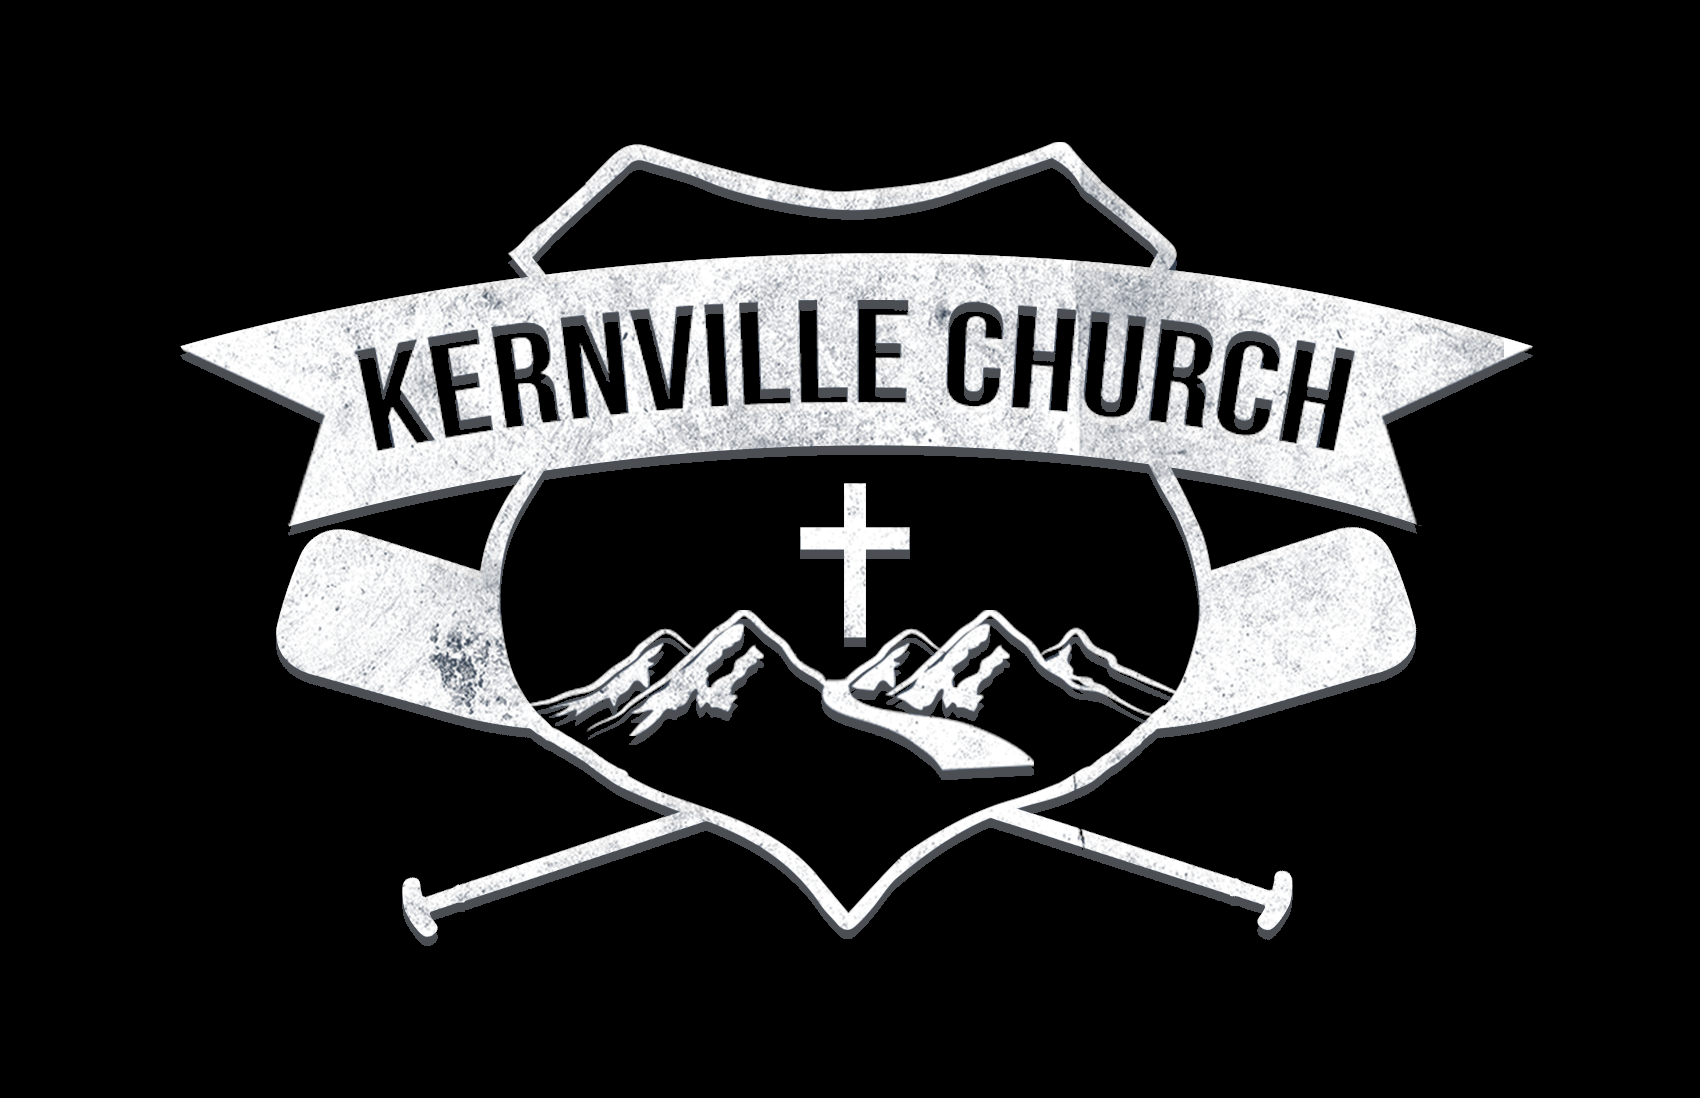 KERNVILLE CHURCH